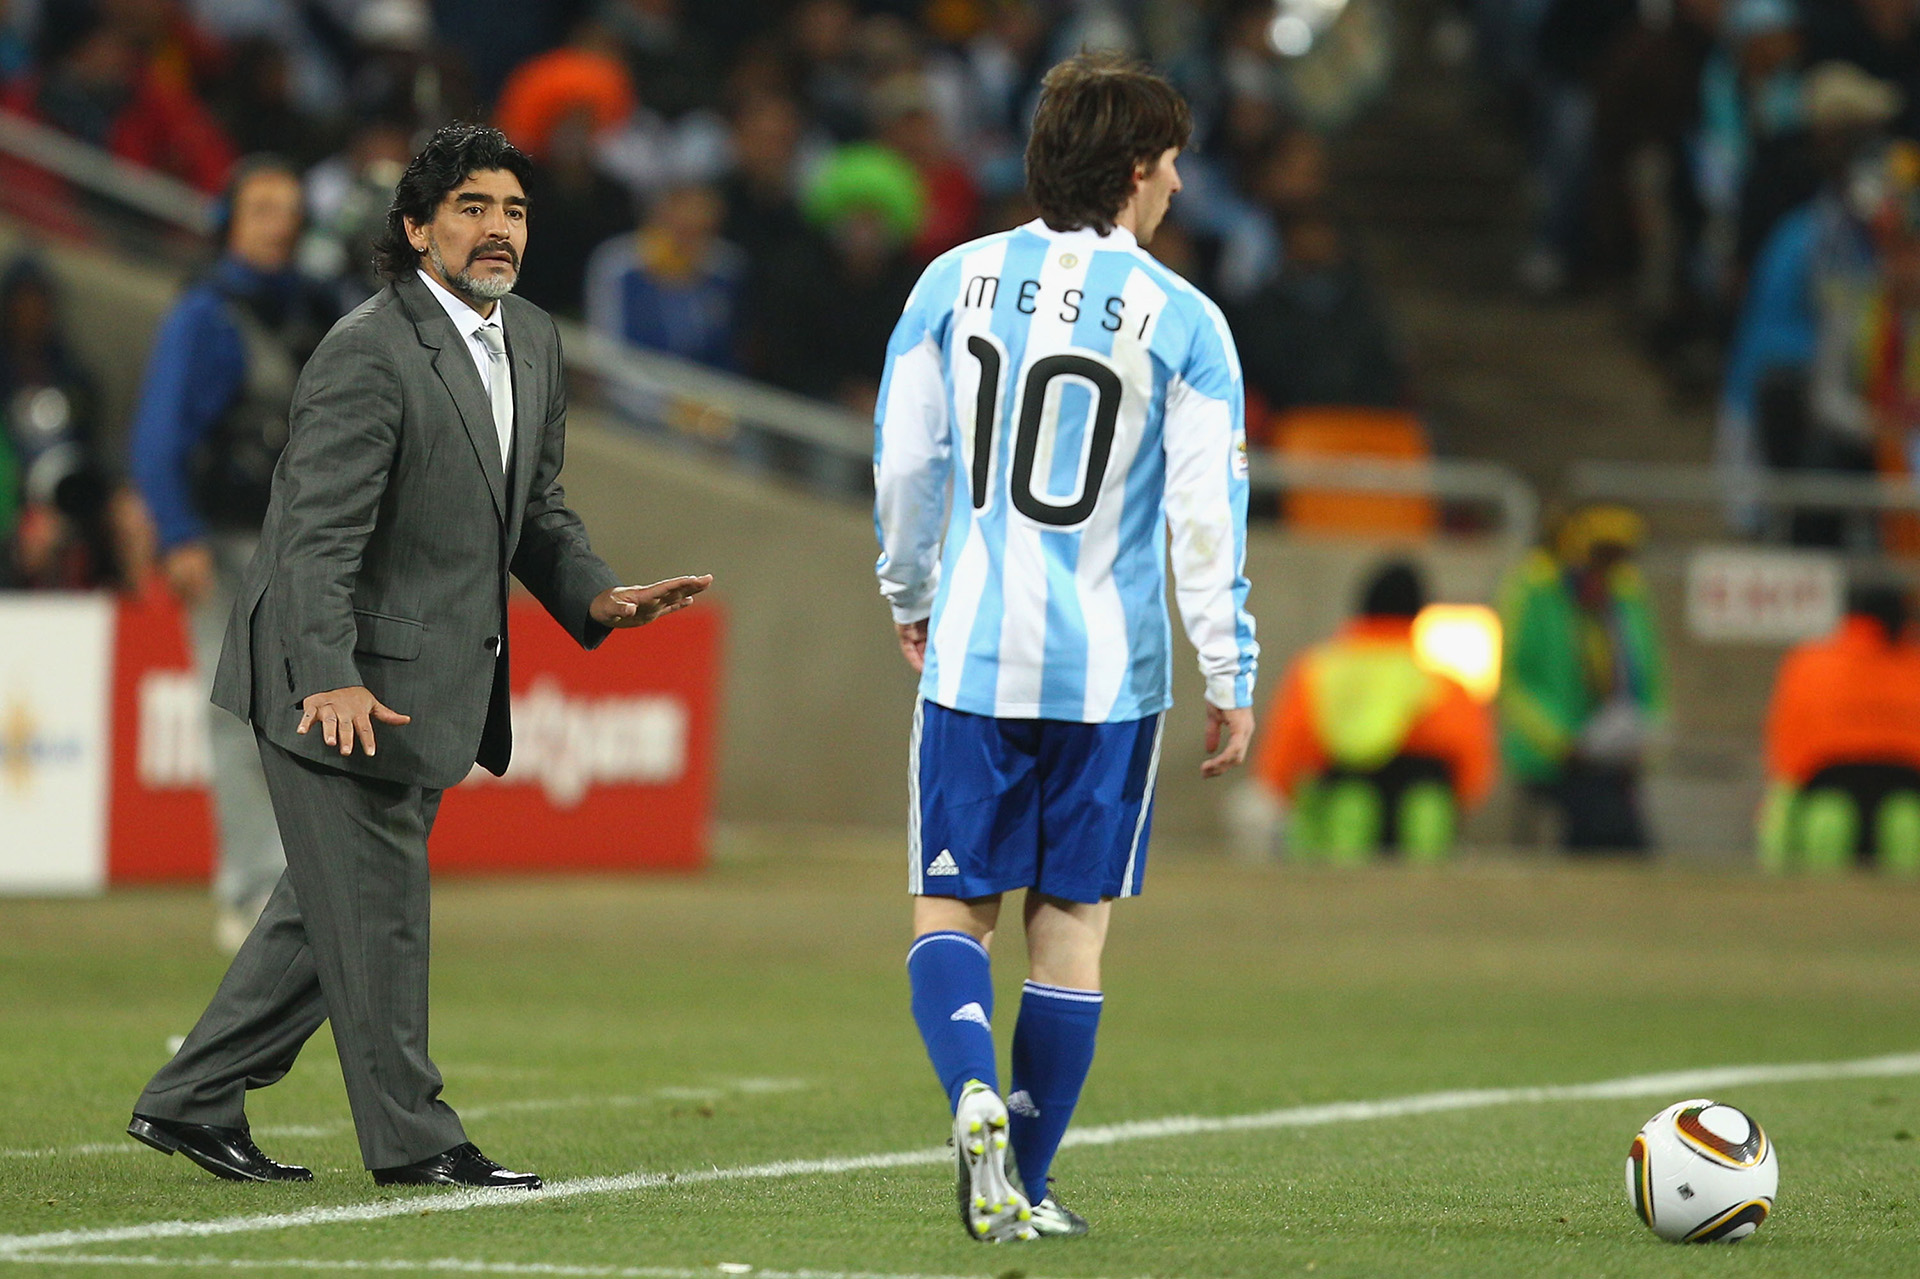 Maradona técnico, Messi en la cancha. Mundial 2010. Entre ambas figuras se reparten muchos de los récords de quienes vistieron la camiseta argentina